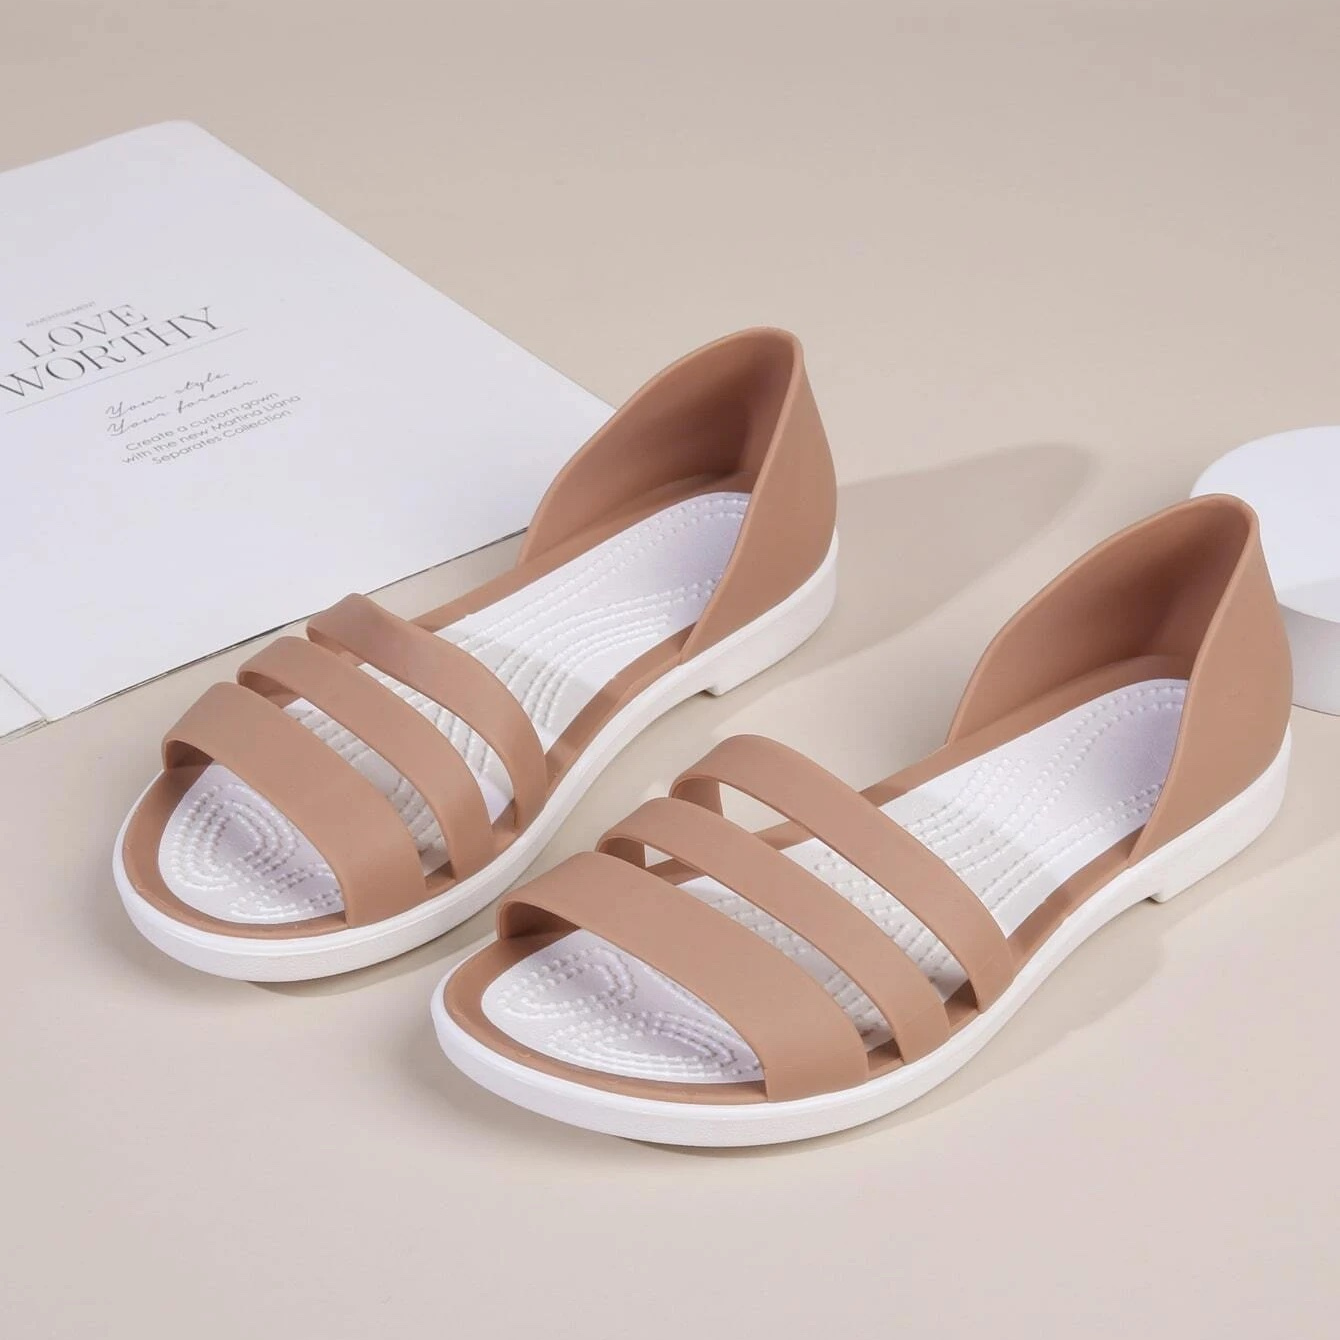 Outdoor Sandals for Rainy Season Shoe Slipper for Women kids girls-sgquangbinhtourist.com.vn